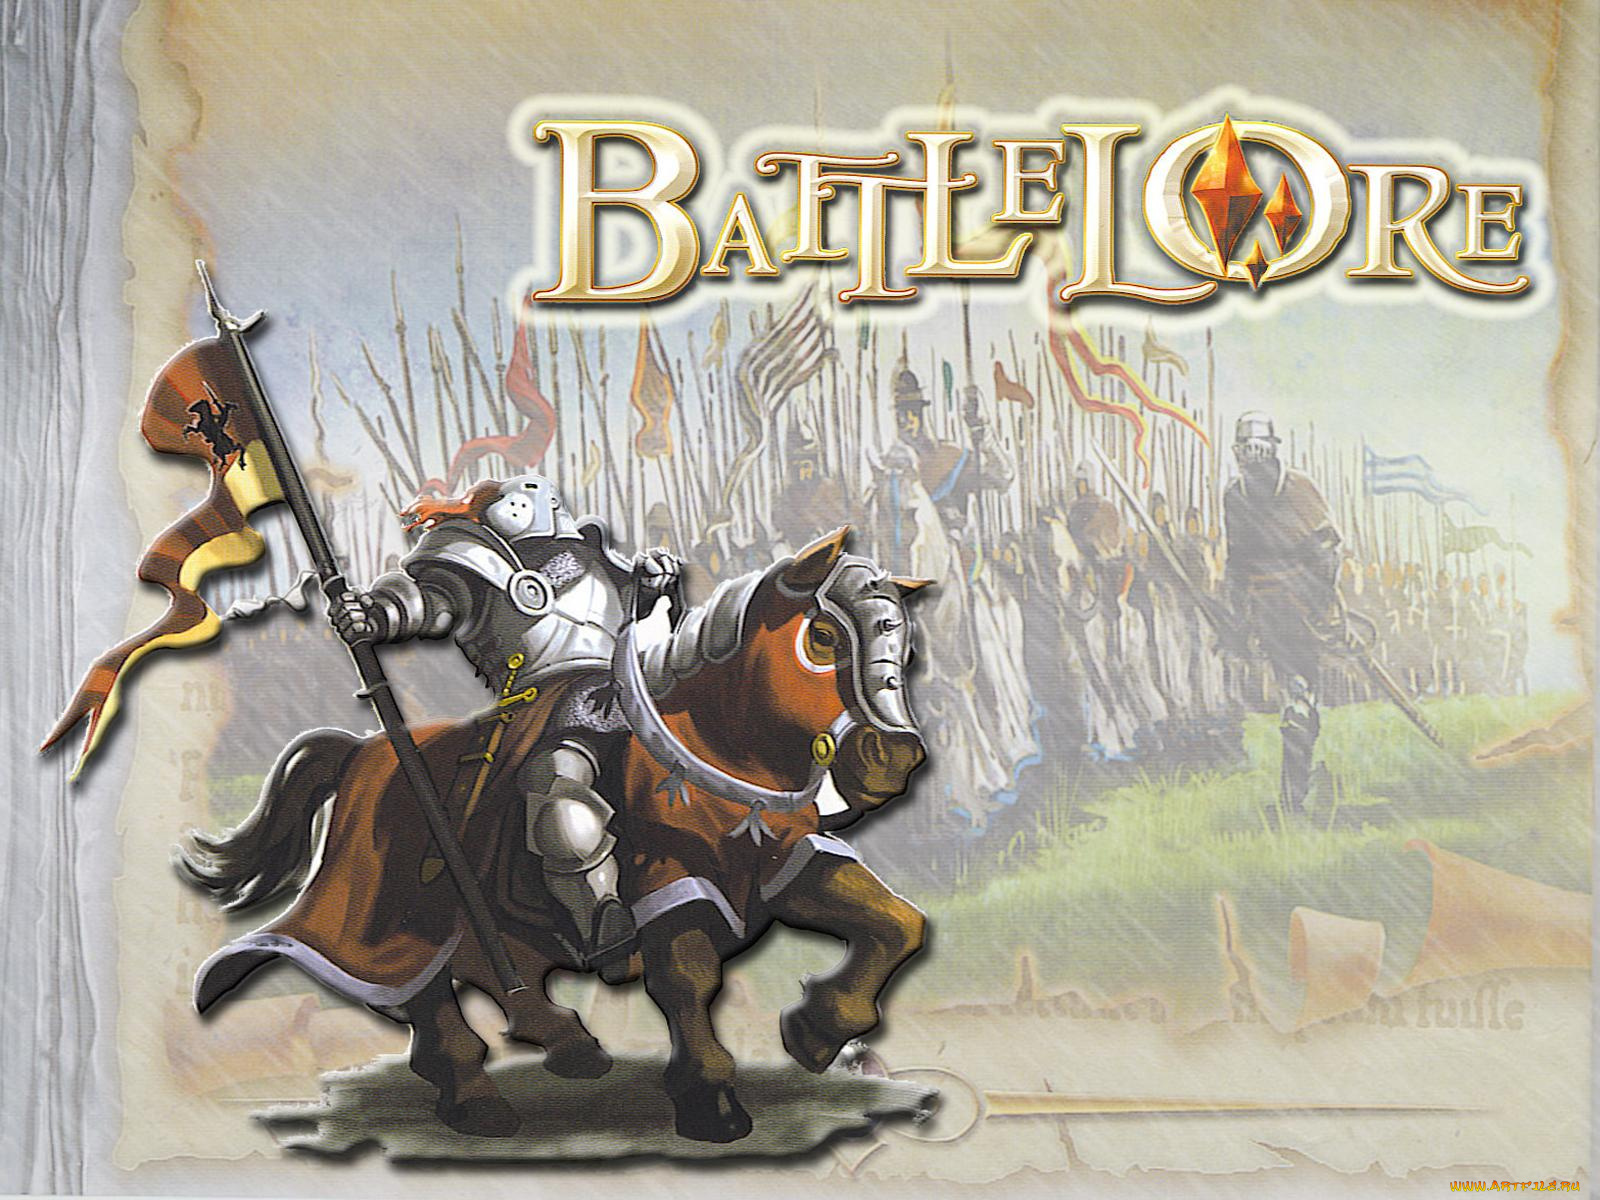 battlelore, видео, игры